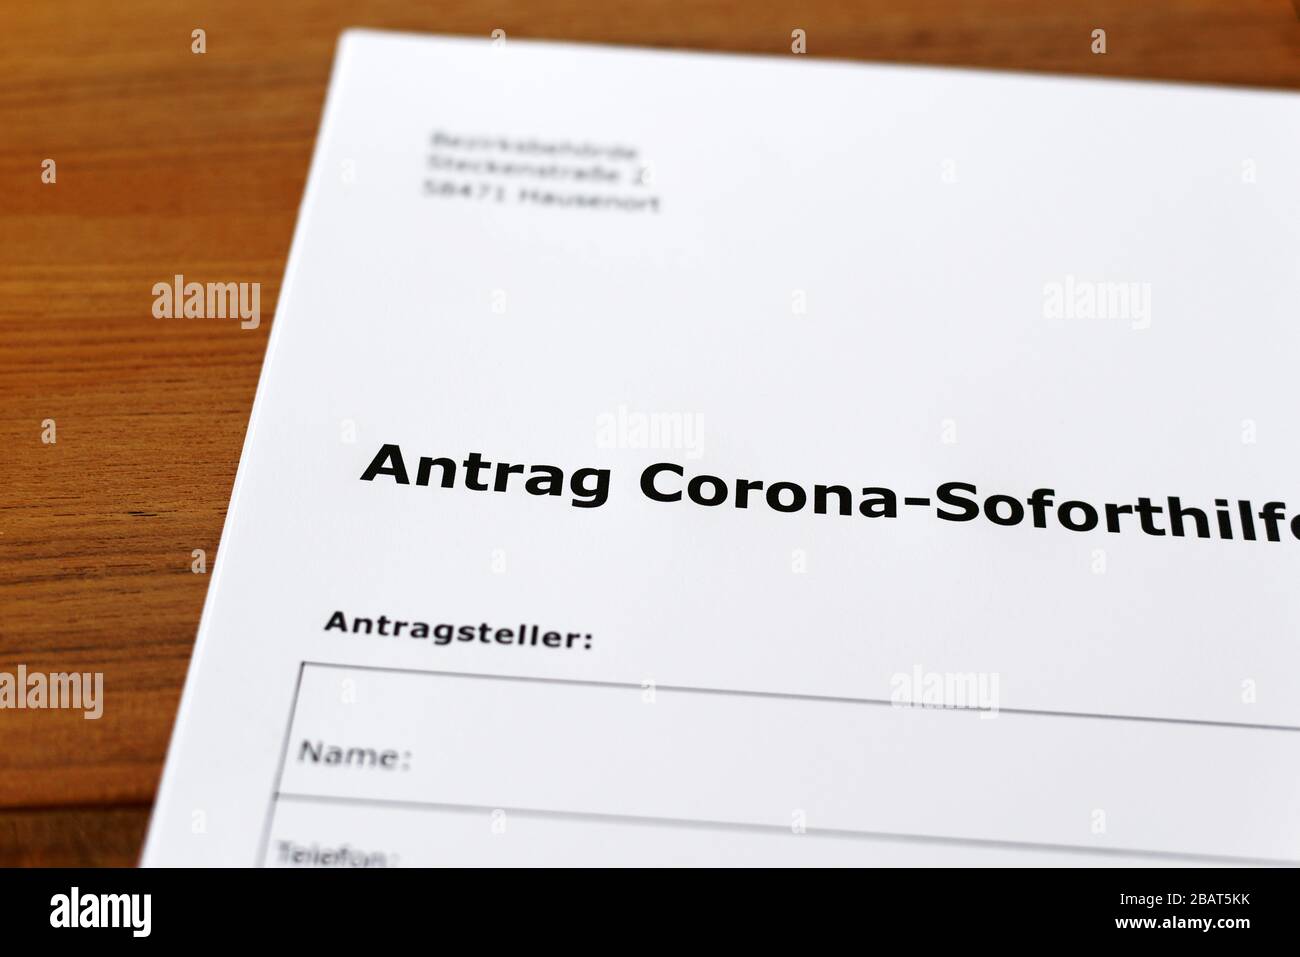 Une feuille de papier avec les mots allemands 'Antrag Corona-Soforsilfe' - Traduction en englisch: Demande d'aide immédiate de Corona. Banque D'Images